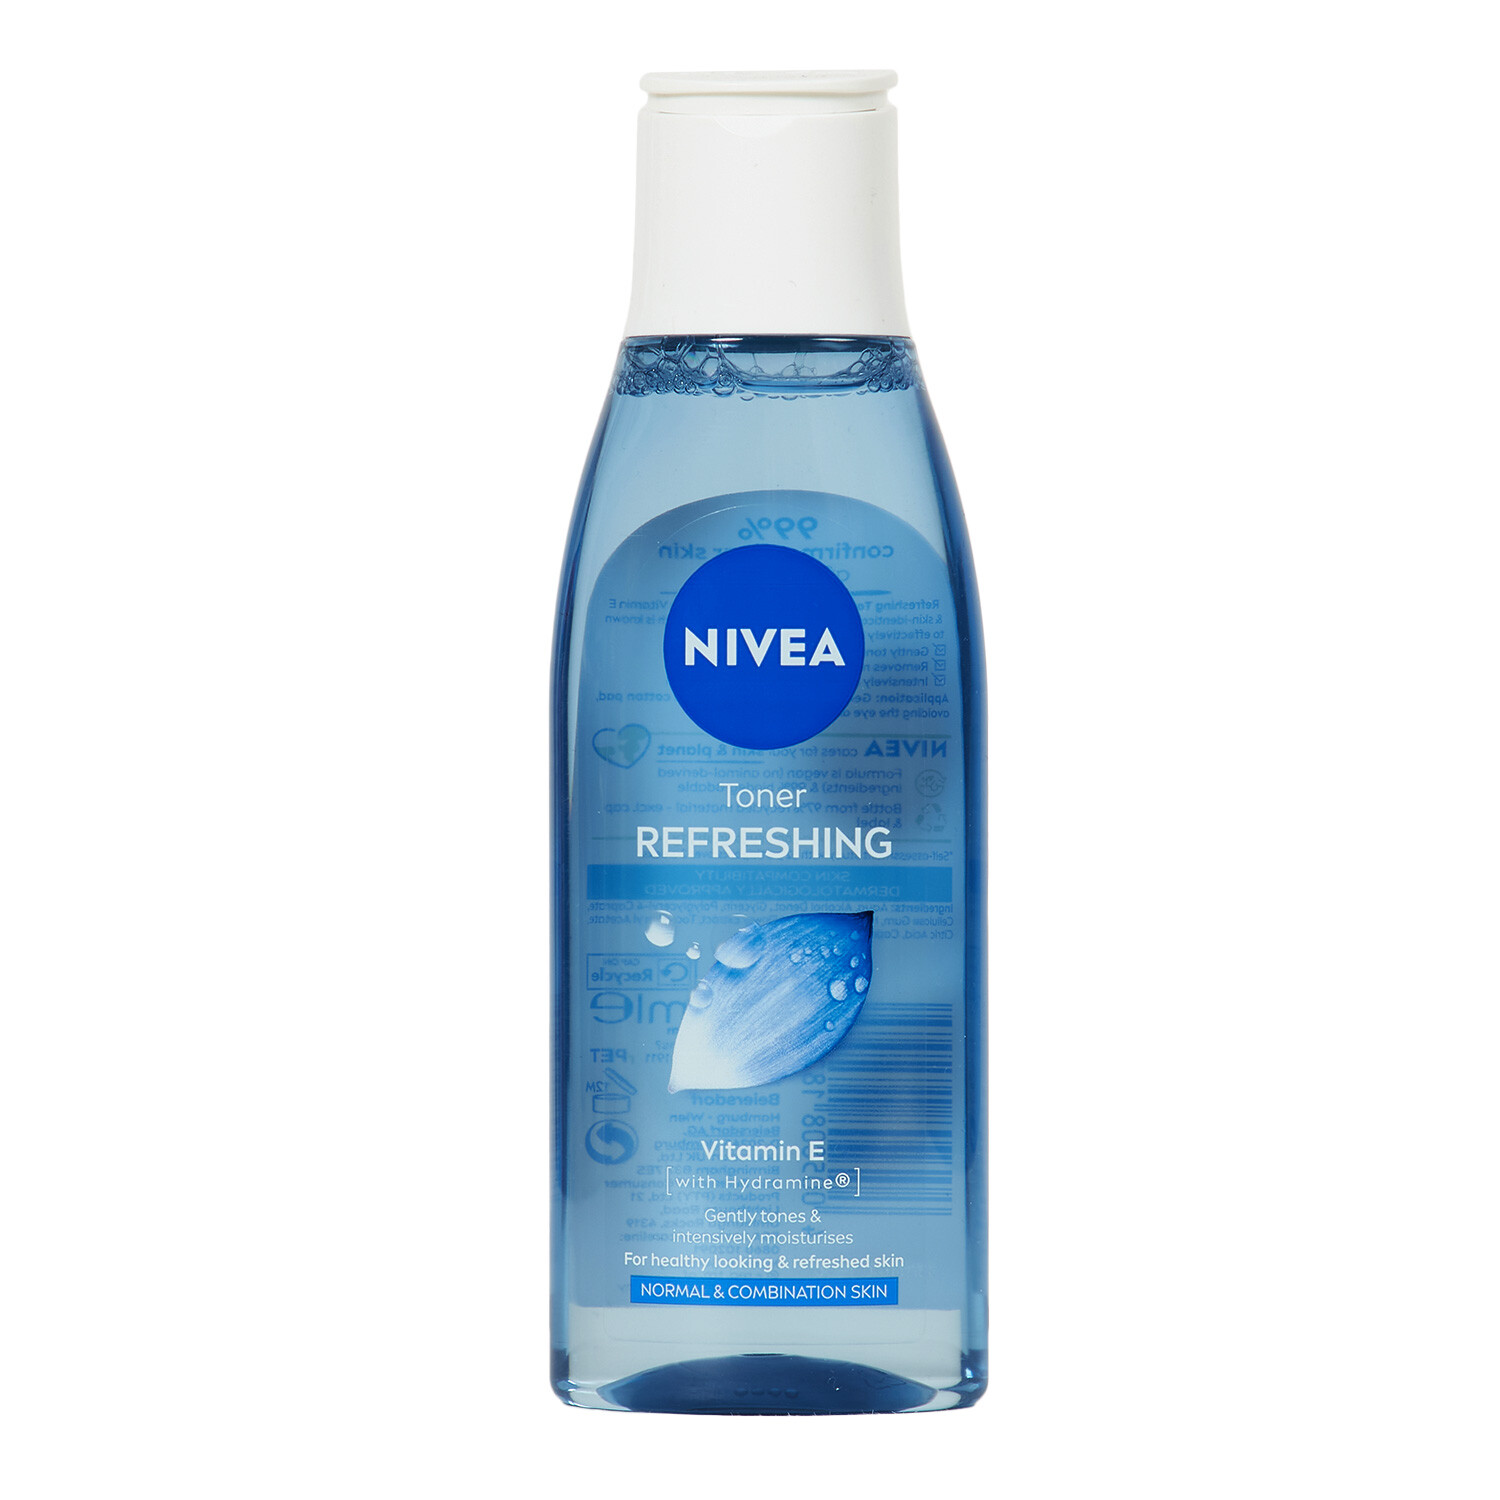 Nivea Refreshing Toner 200ml - Blue Image 1